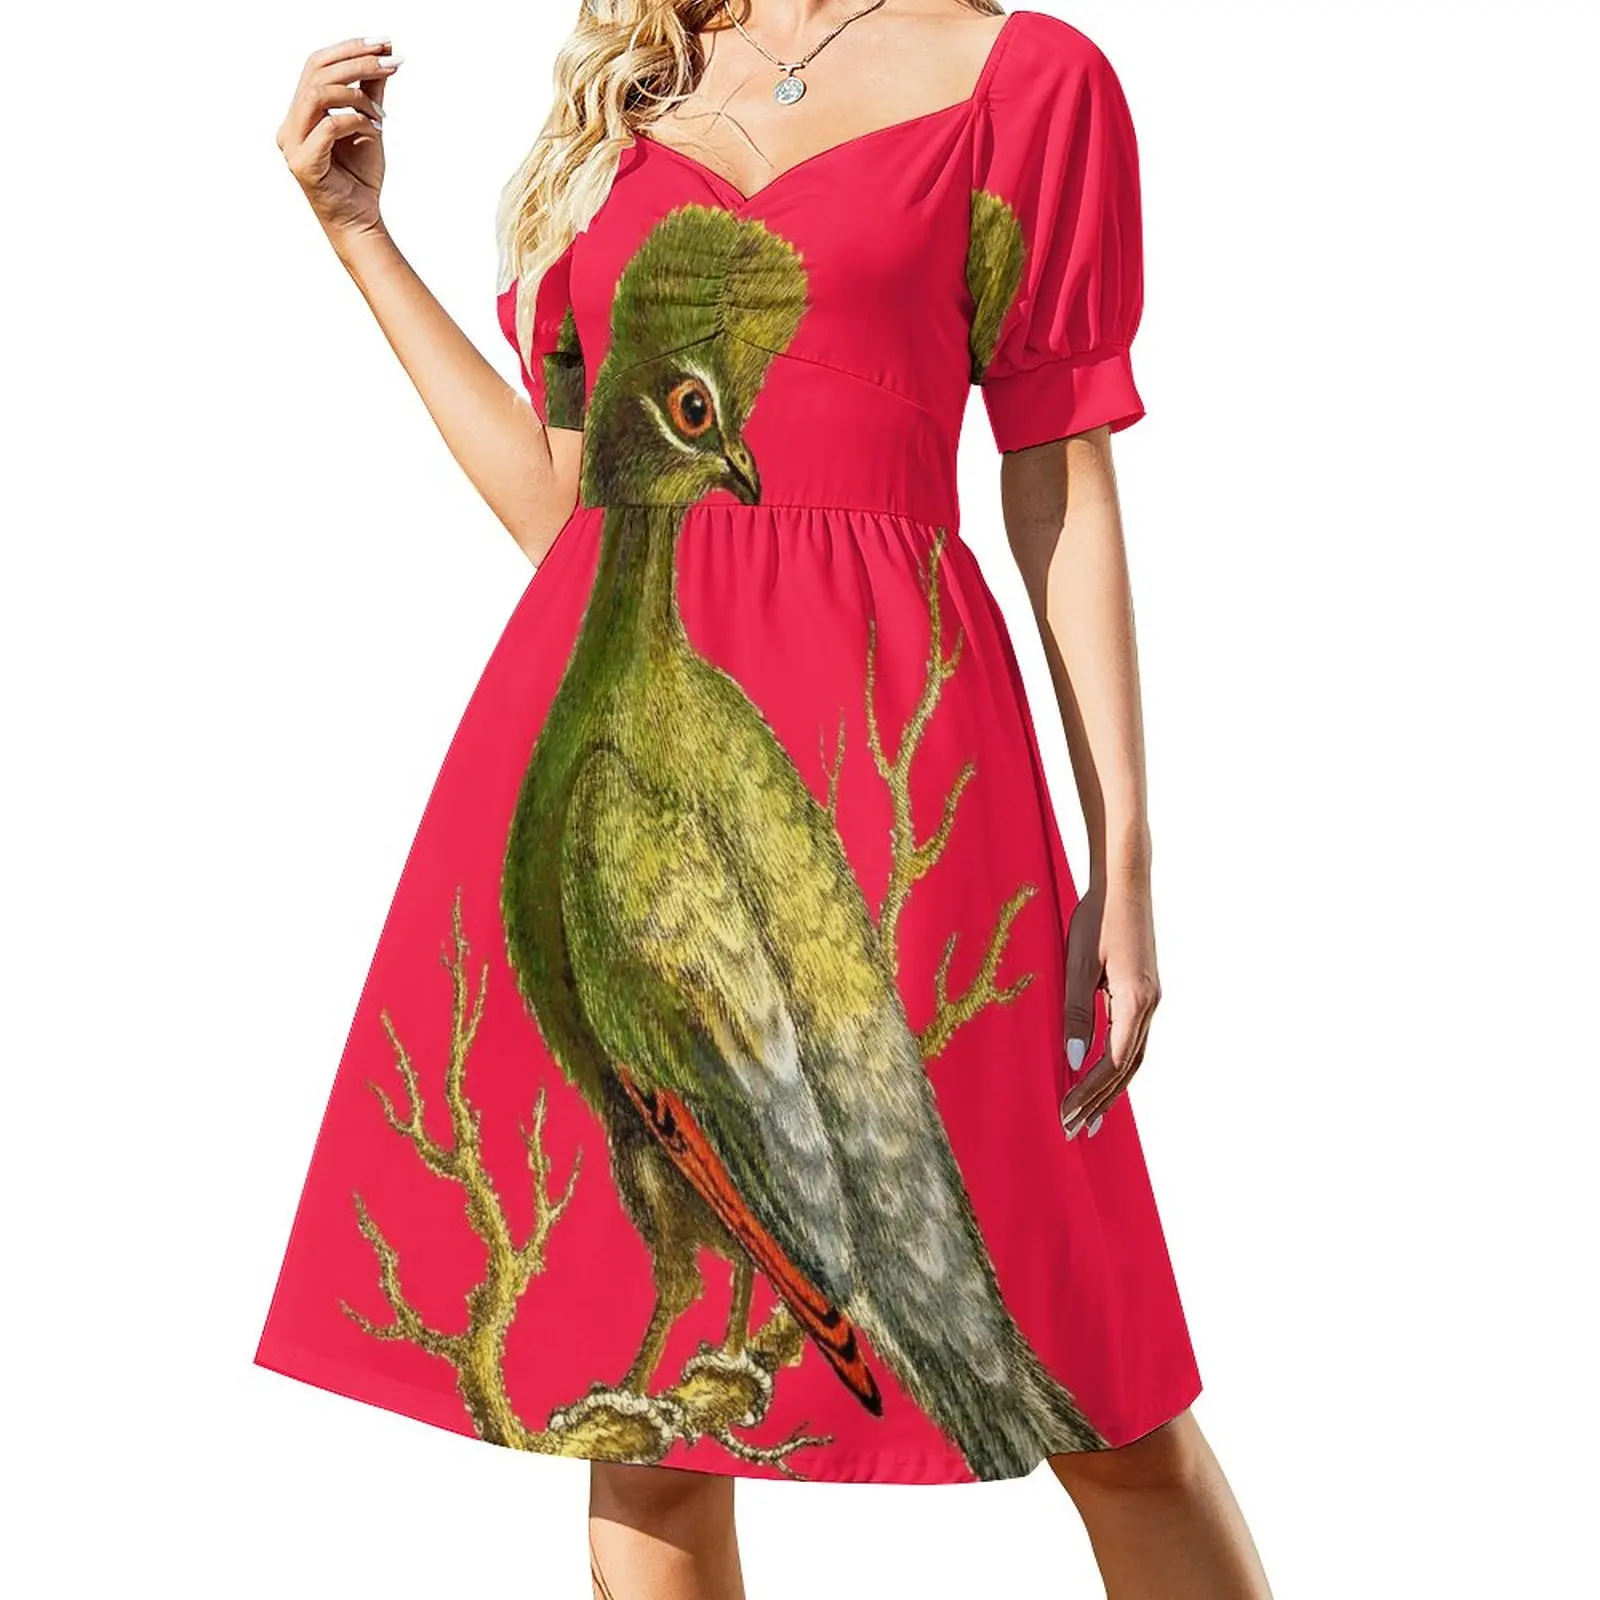 

Touraco - Bird HD винтажное изображение из энциклопедии номер 18 платье без рукавов фиолетовое платье роскошное женское вечернее платье